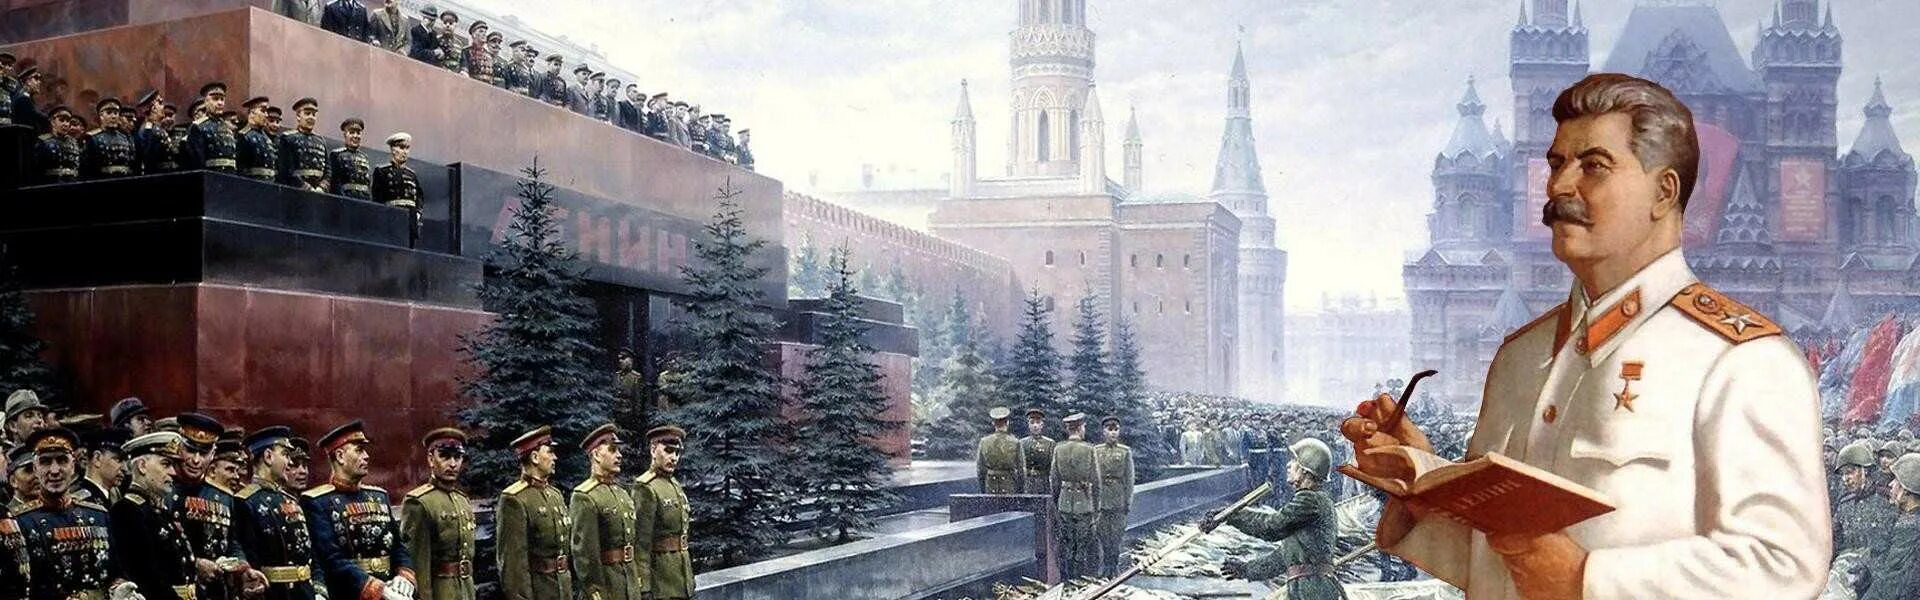 9 мая будет ссср. Сталин Иосиф Виссарионович на параде Победы. Иосиф Сталин 1945. Мавзолей Ленина парад Победы 1945.